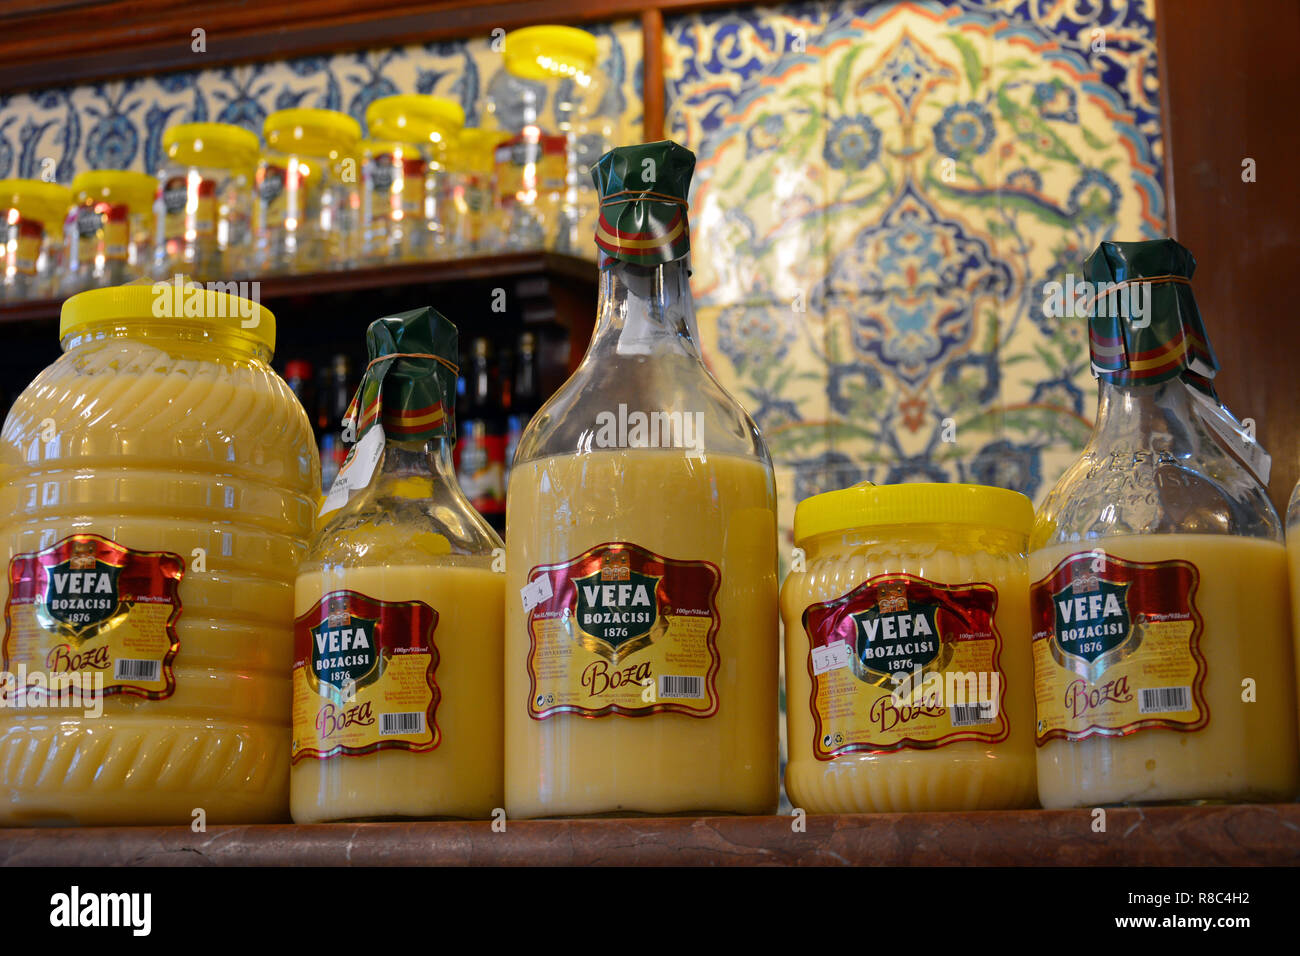 Istanbul, Türkei - 4. November 2015. Flaschen der Firma Schär Bozacisi boza viskose Tonic, aus Wasser, Zucker und fermentierter Gerste, Istanbul. Stockfoto